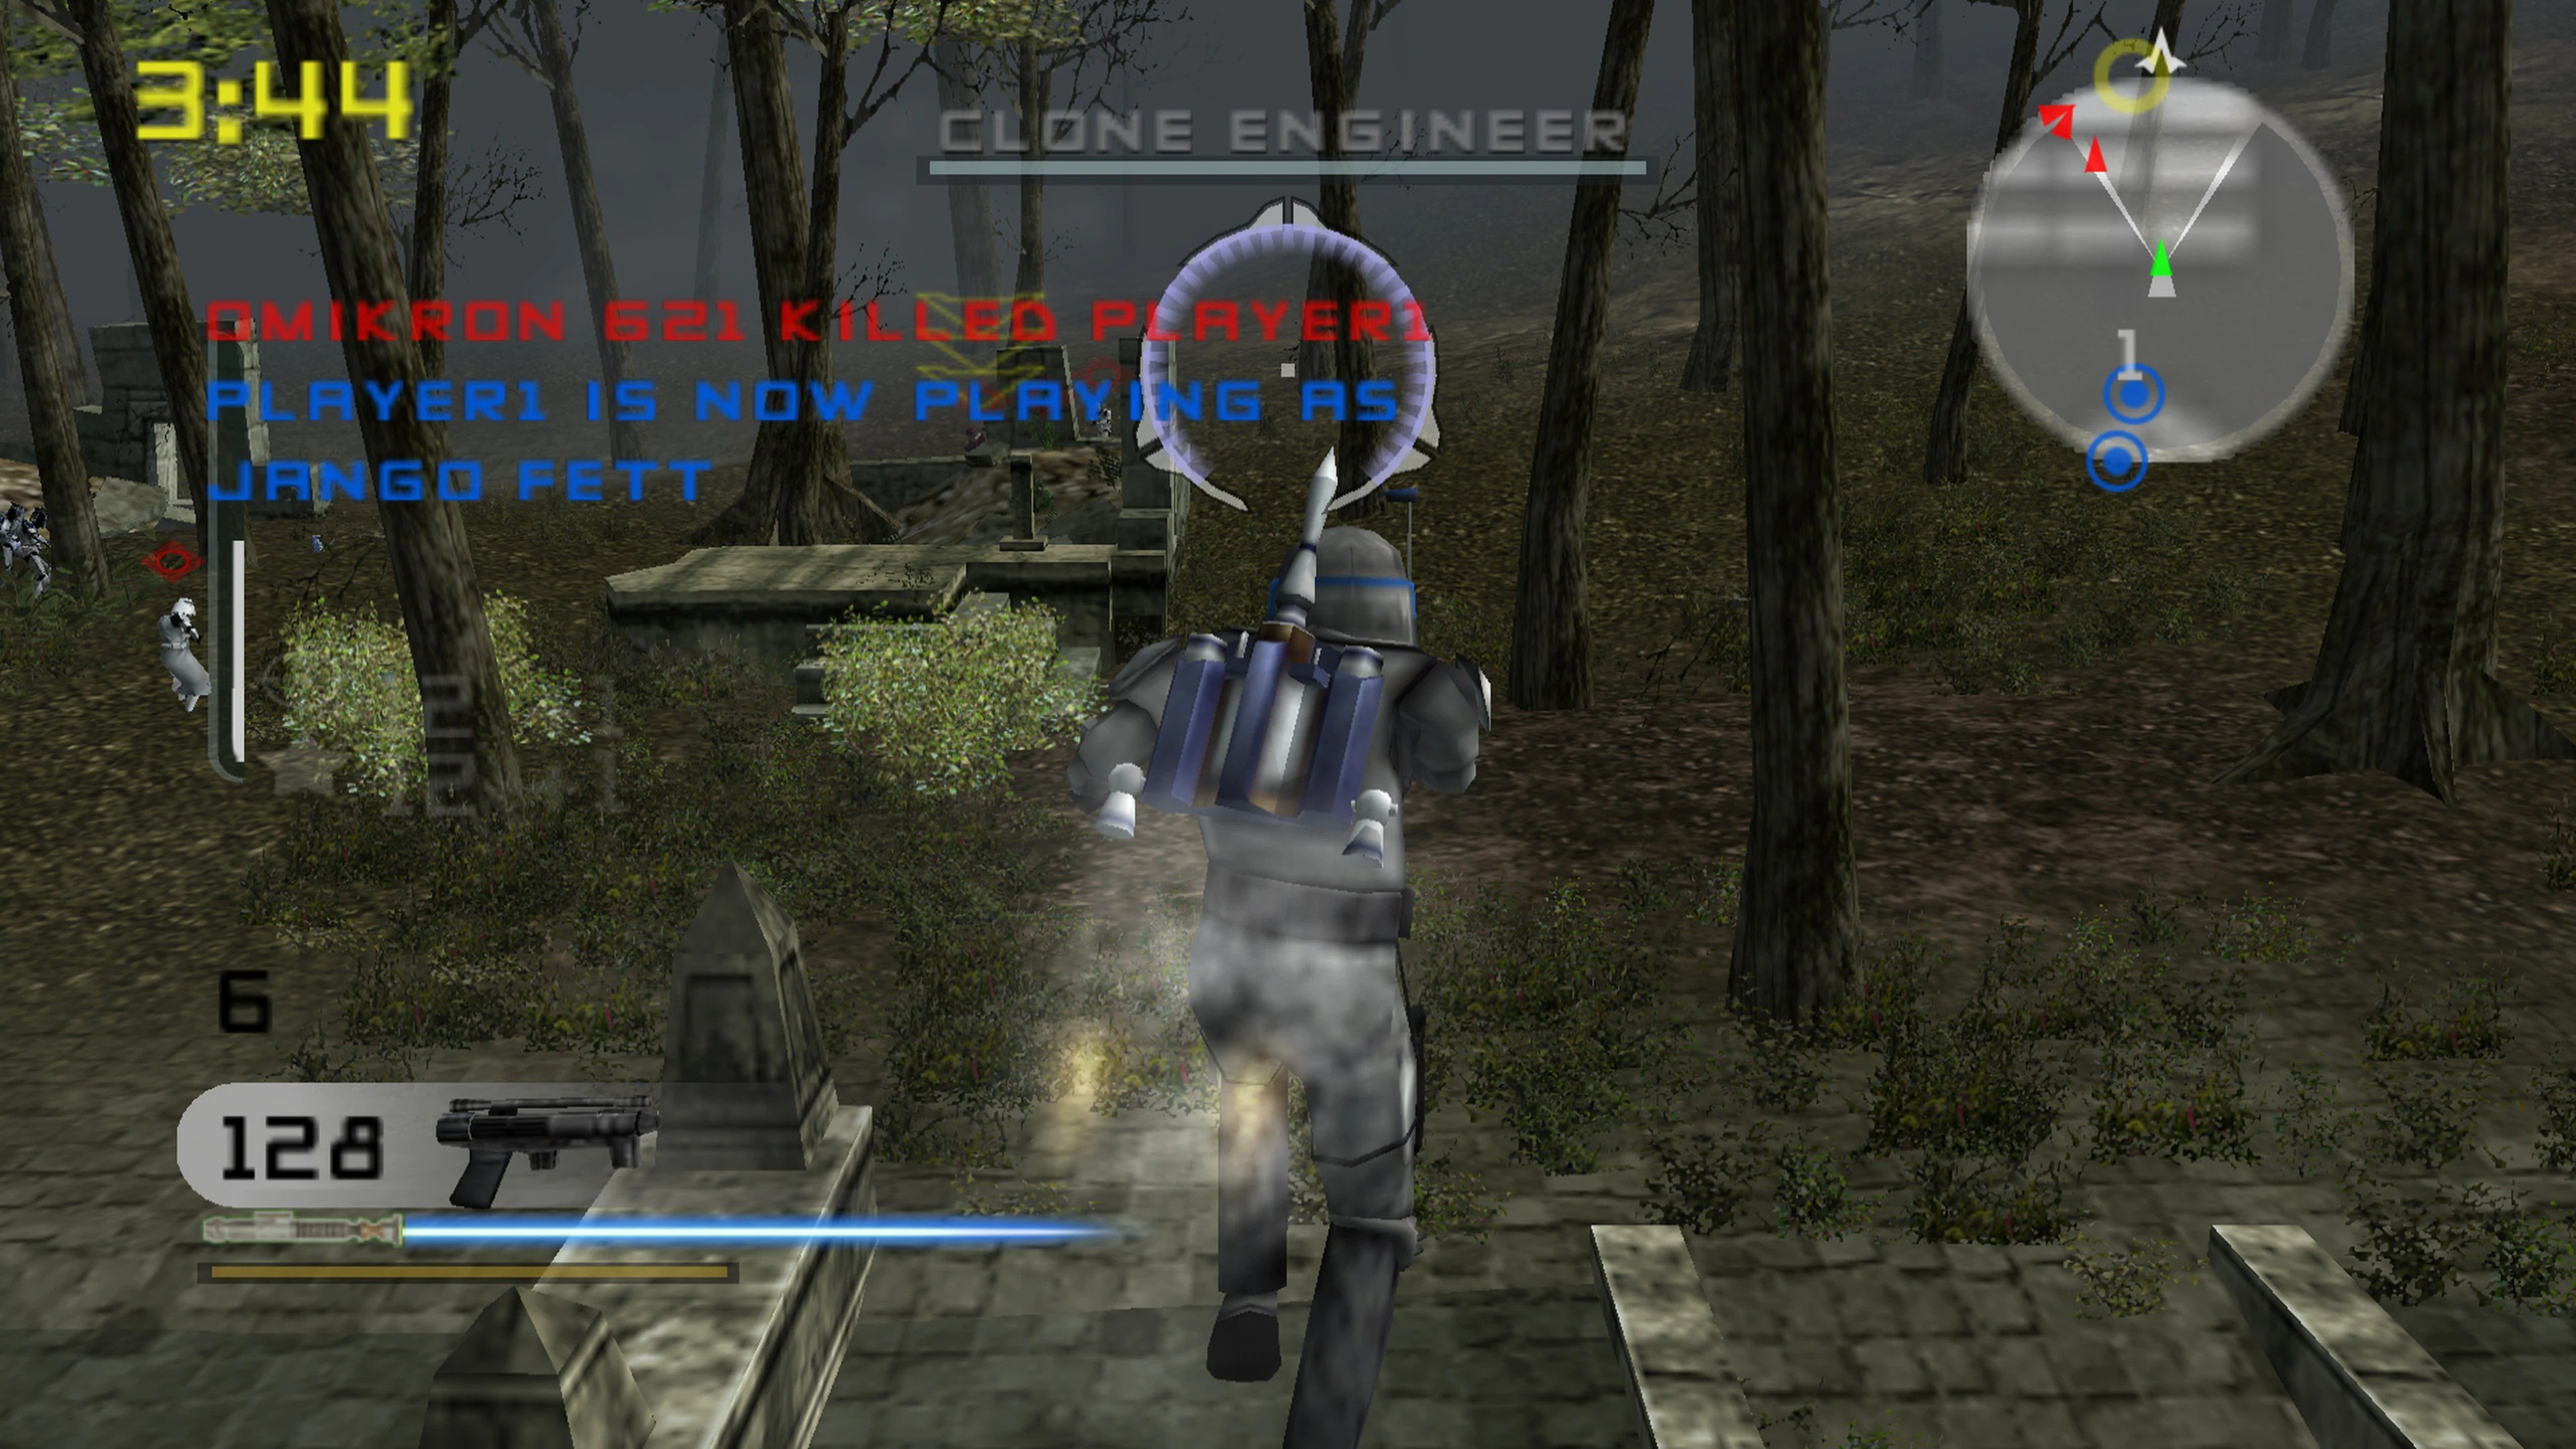 Star Wars - Battlefront ROM - PS2 Download - Emulator Games